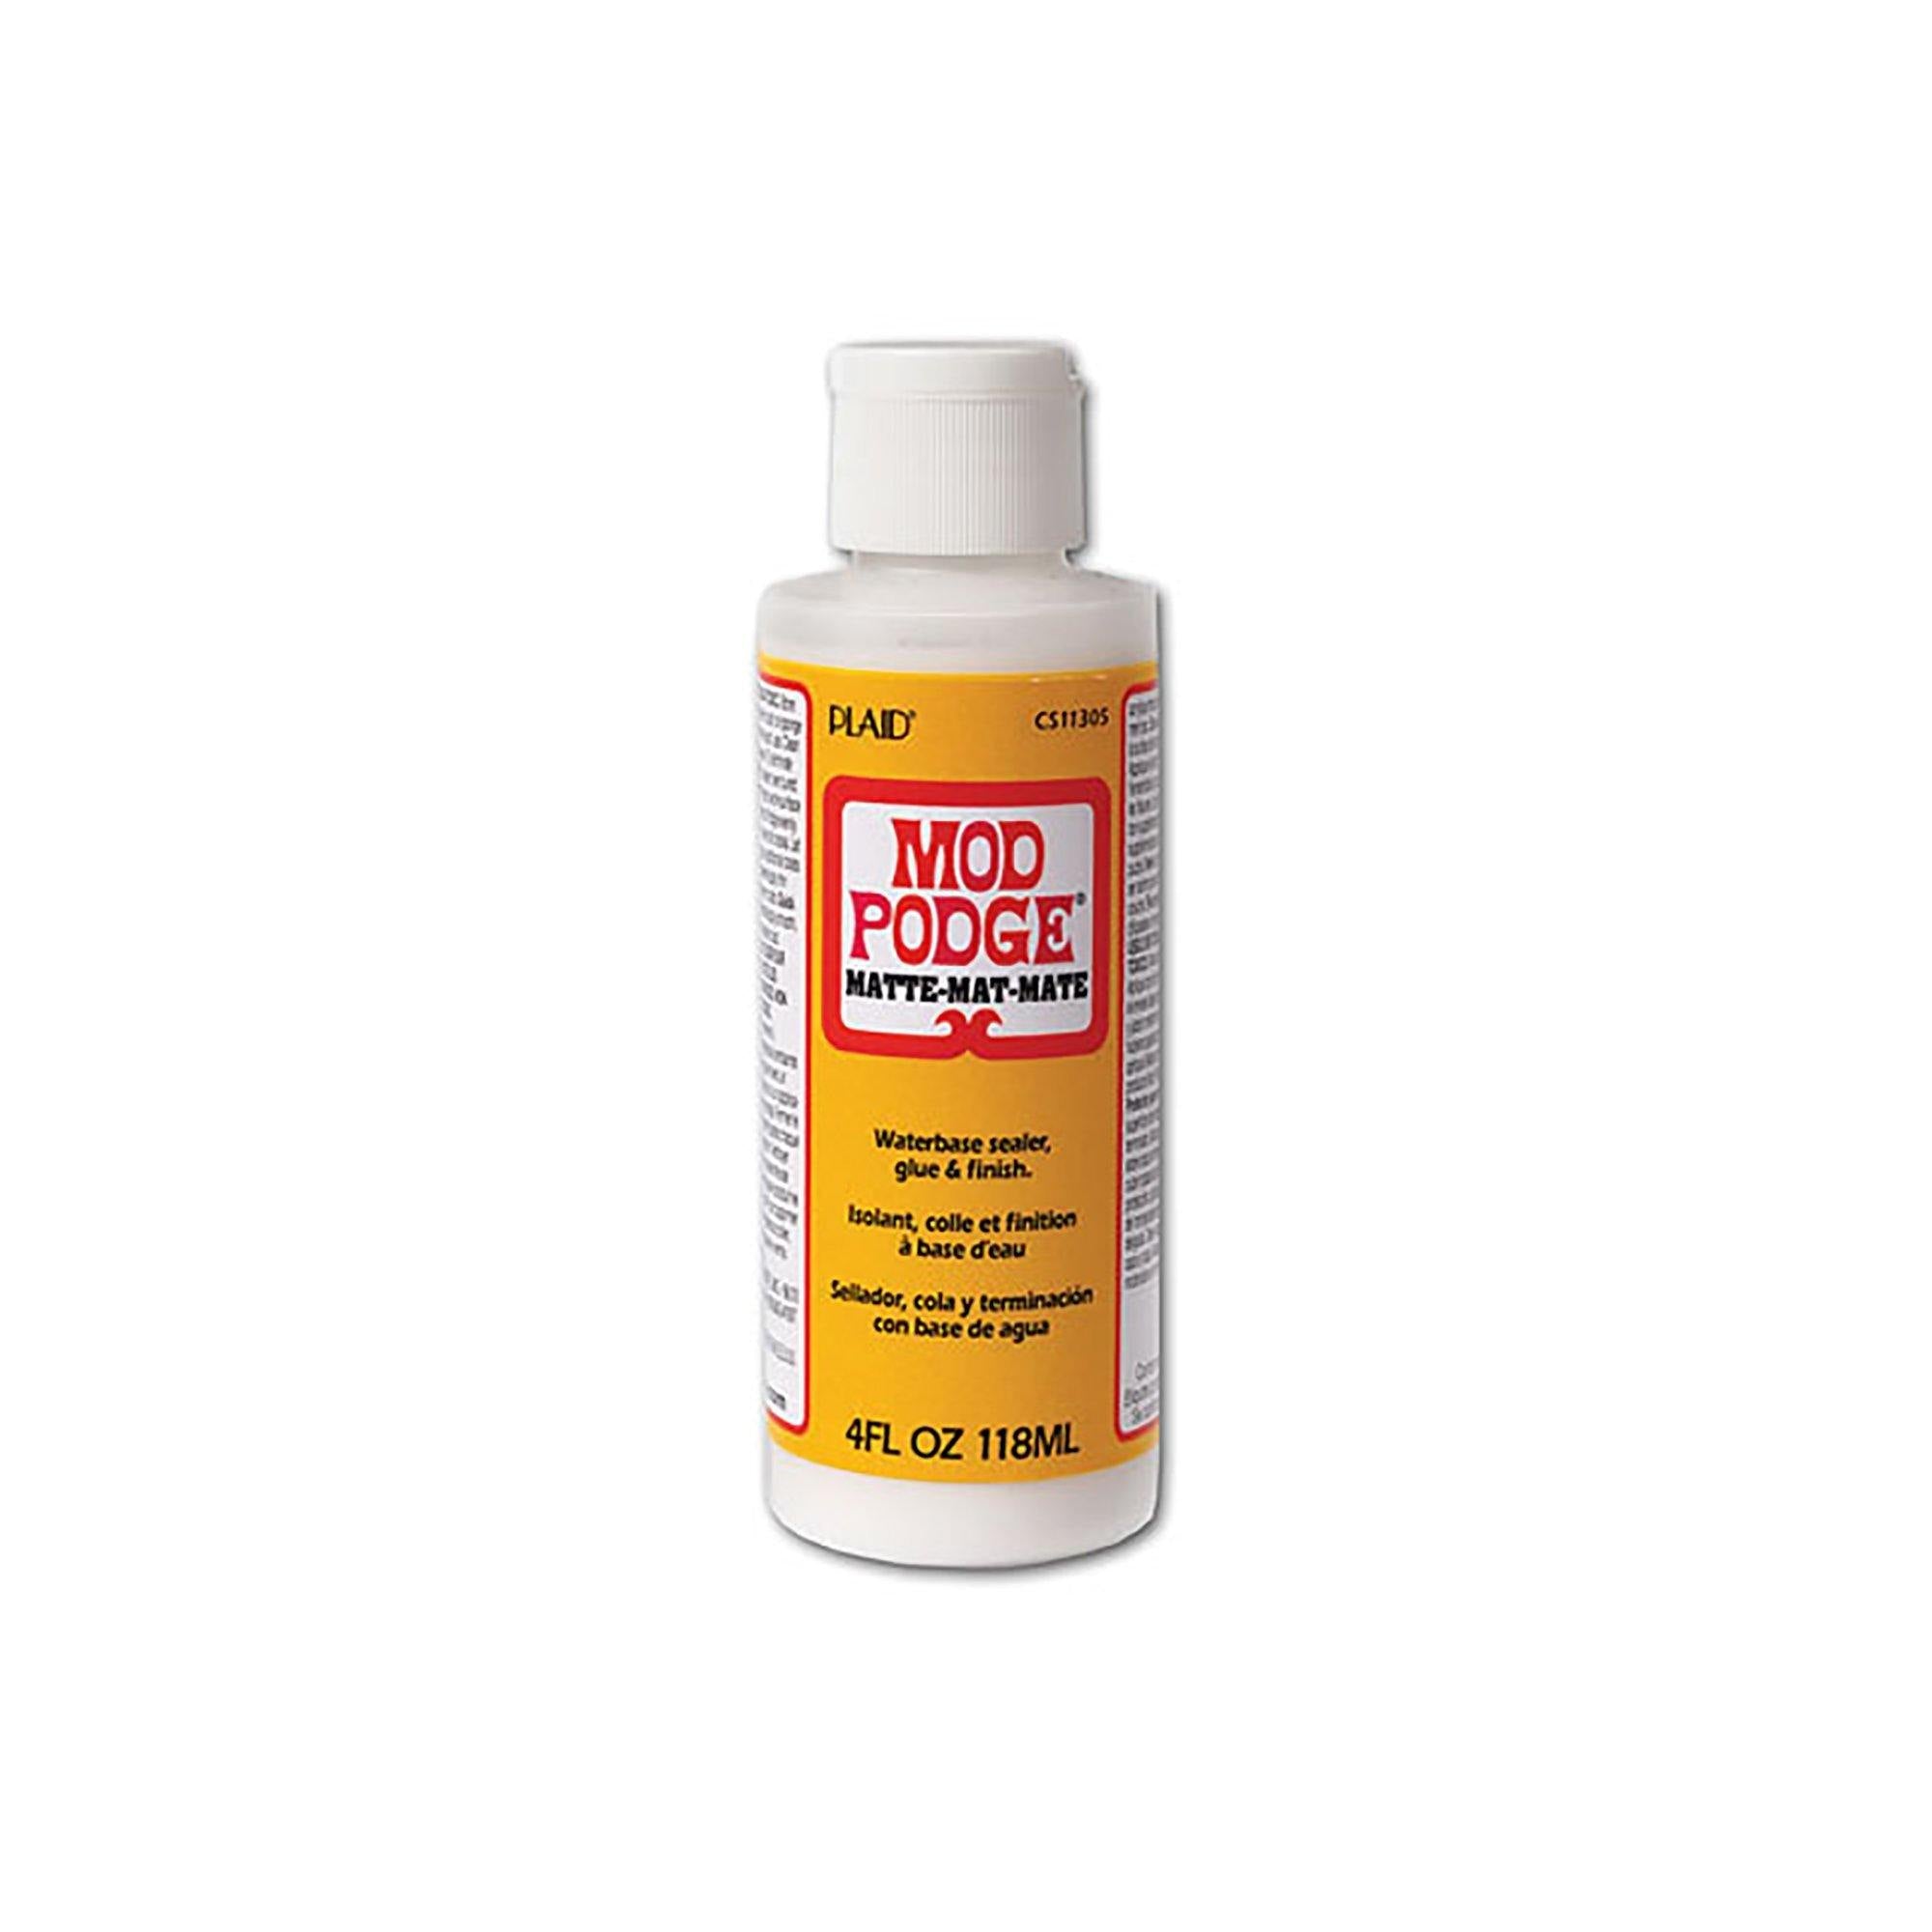 Mod Podge: 8oz Dishwasher Safe Gloss Glue/Sealer/Finish Non-Toxic